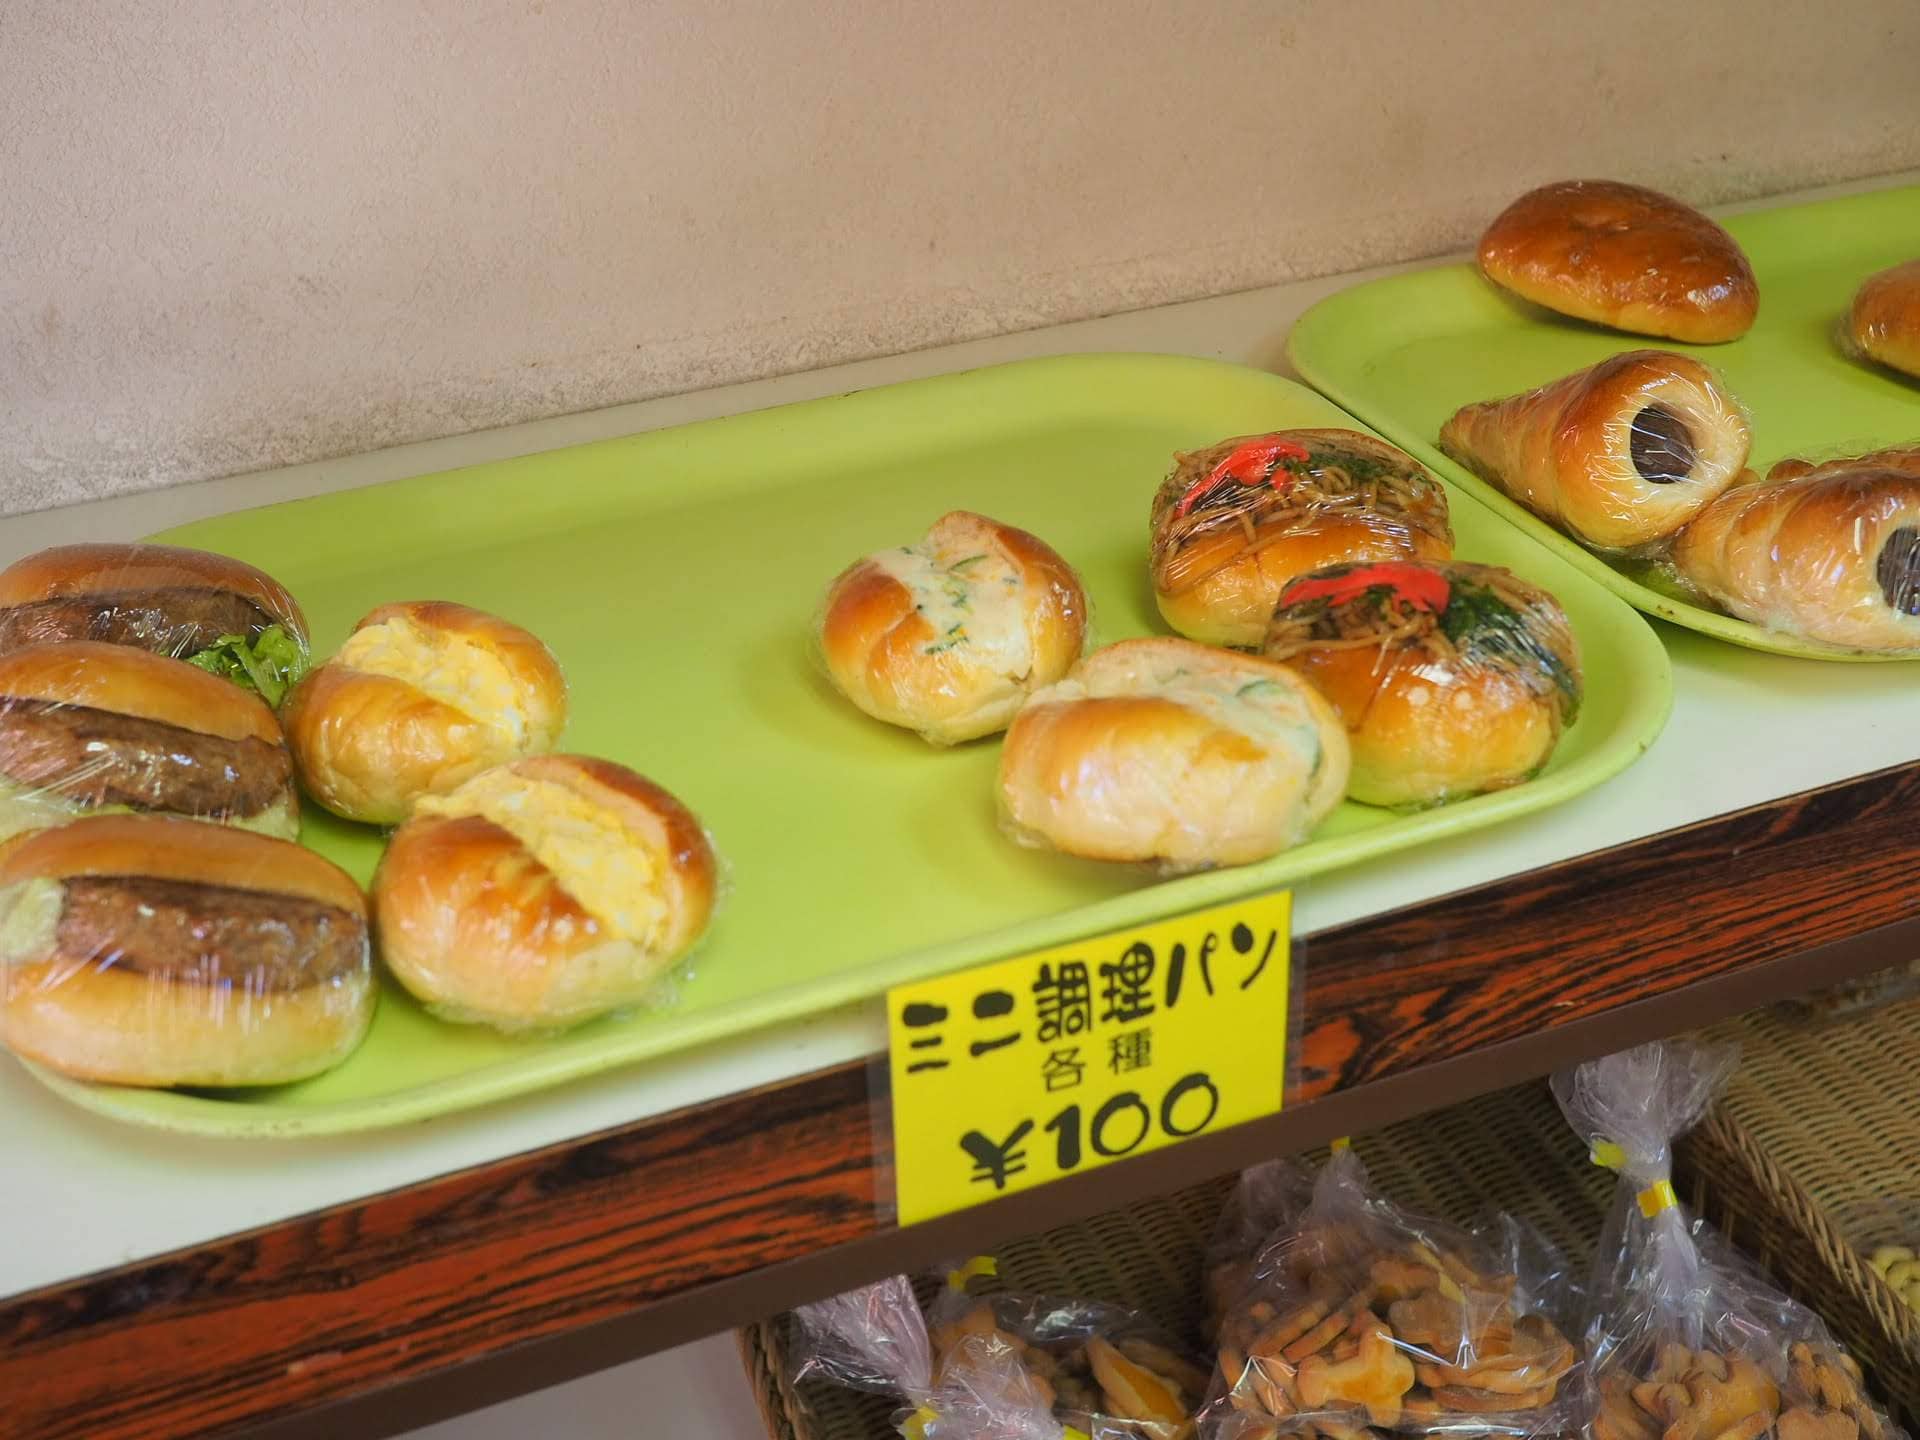 木村屋 千歳烏山 映画 花束みたいな恋をした のロケ地 プリンパンが人気店の玉子サンドを食すっ 大阪のたまごサンドしらんの